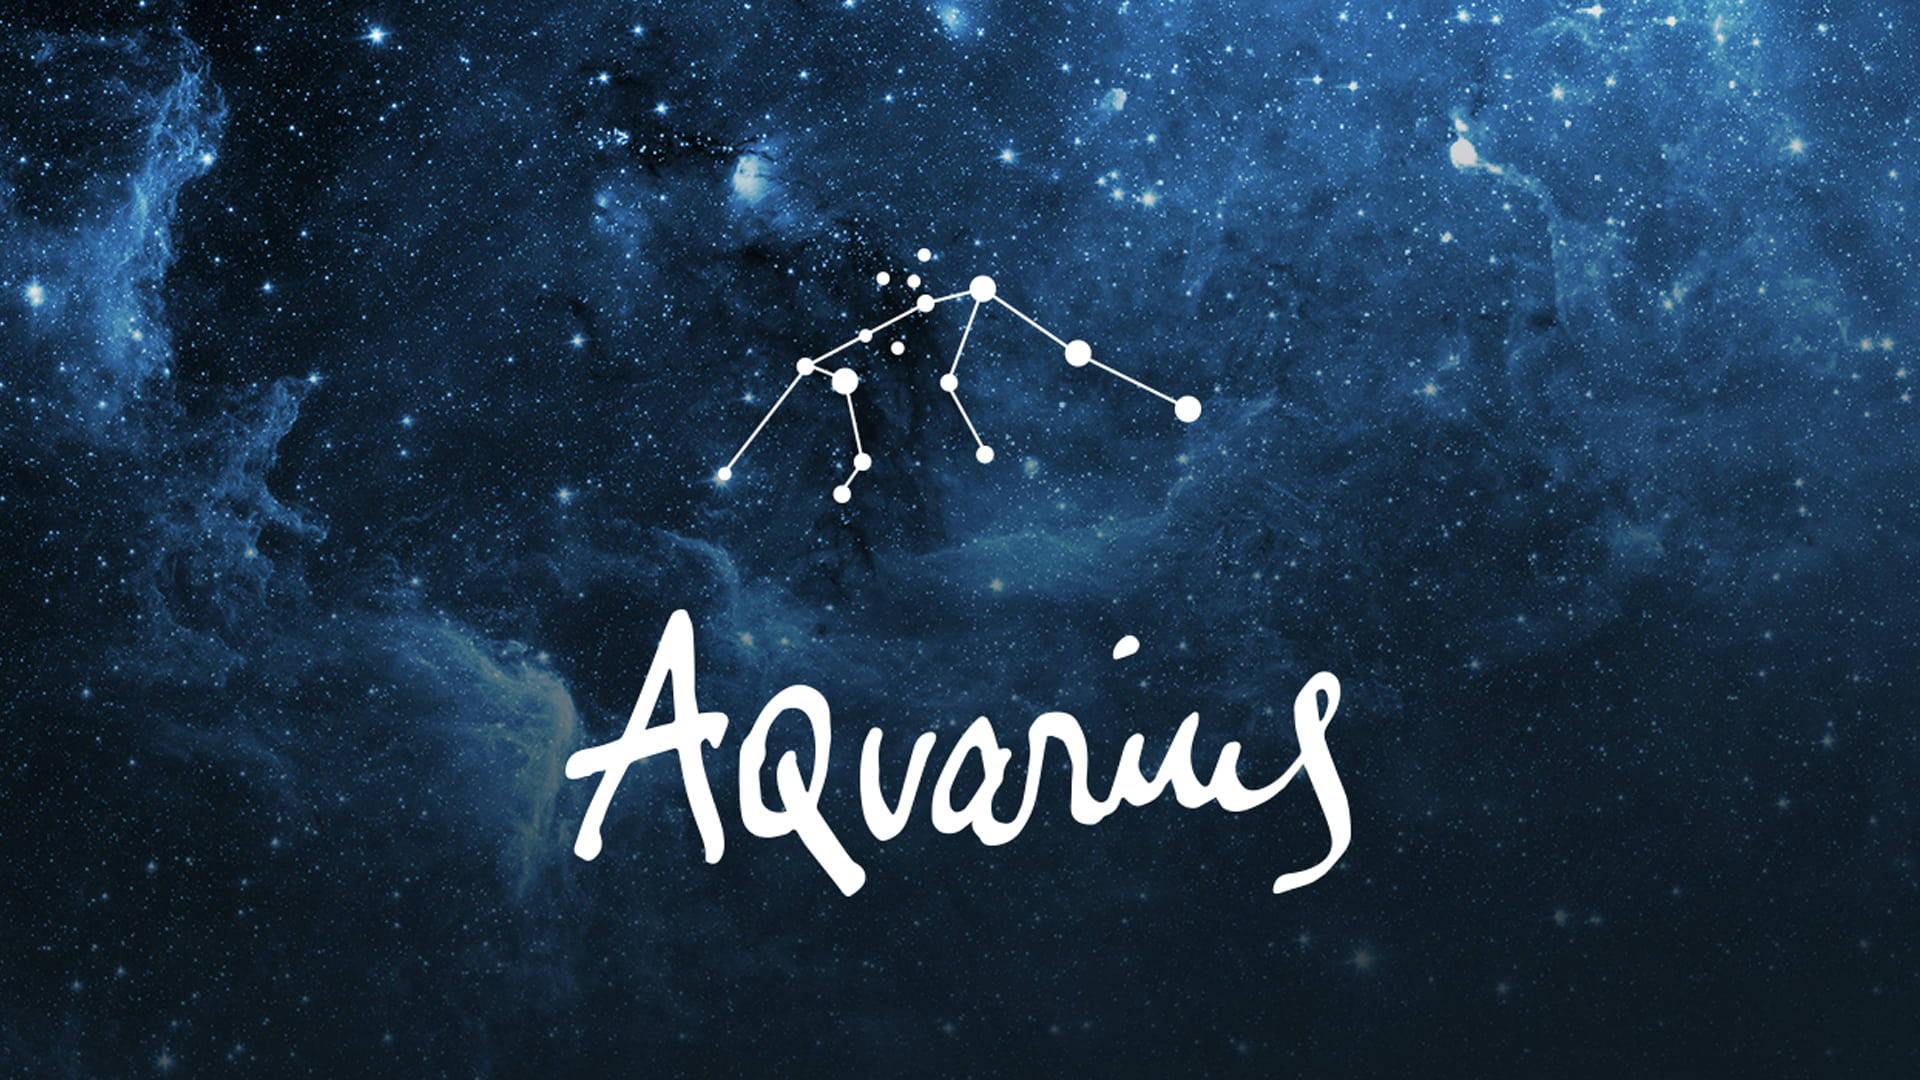 Aquarius In The Sky Wallpaper